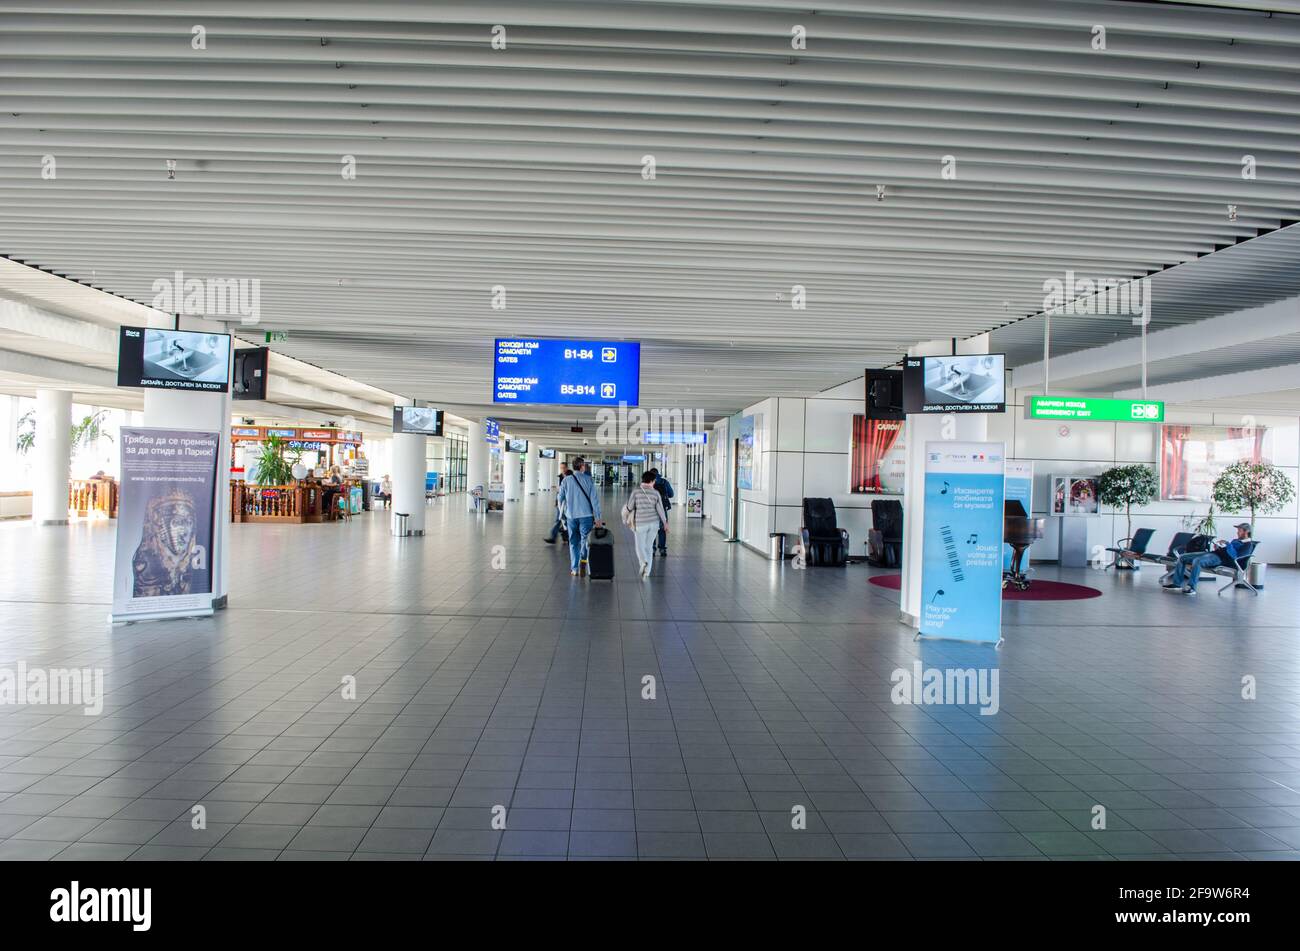 SOFIA, 20. FEBRUAR 2015: Innenansicht des internationalen Flughafens von sofia. Stockfoto